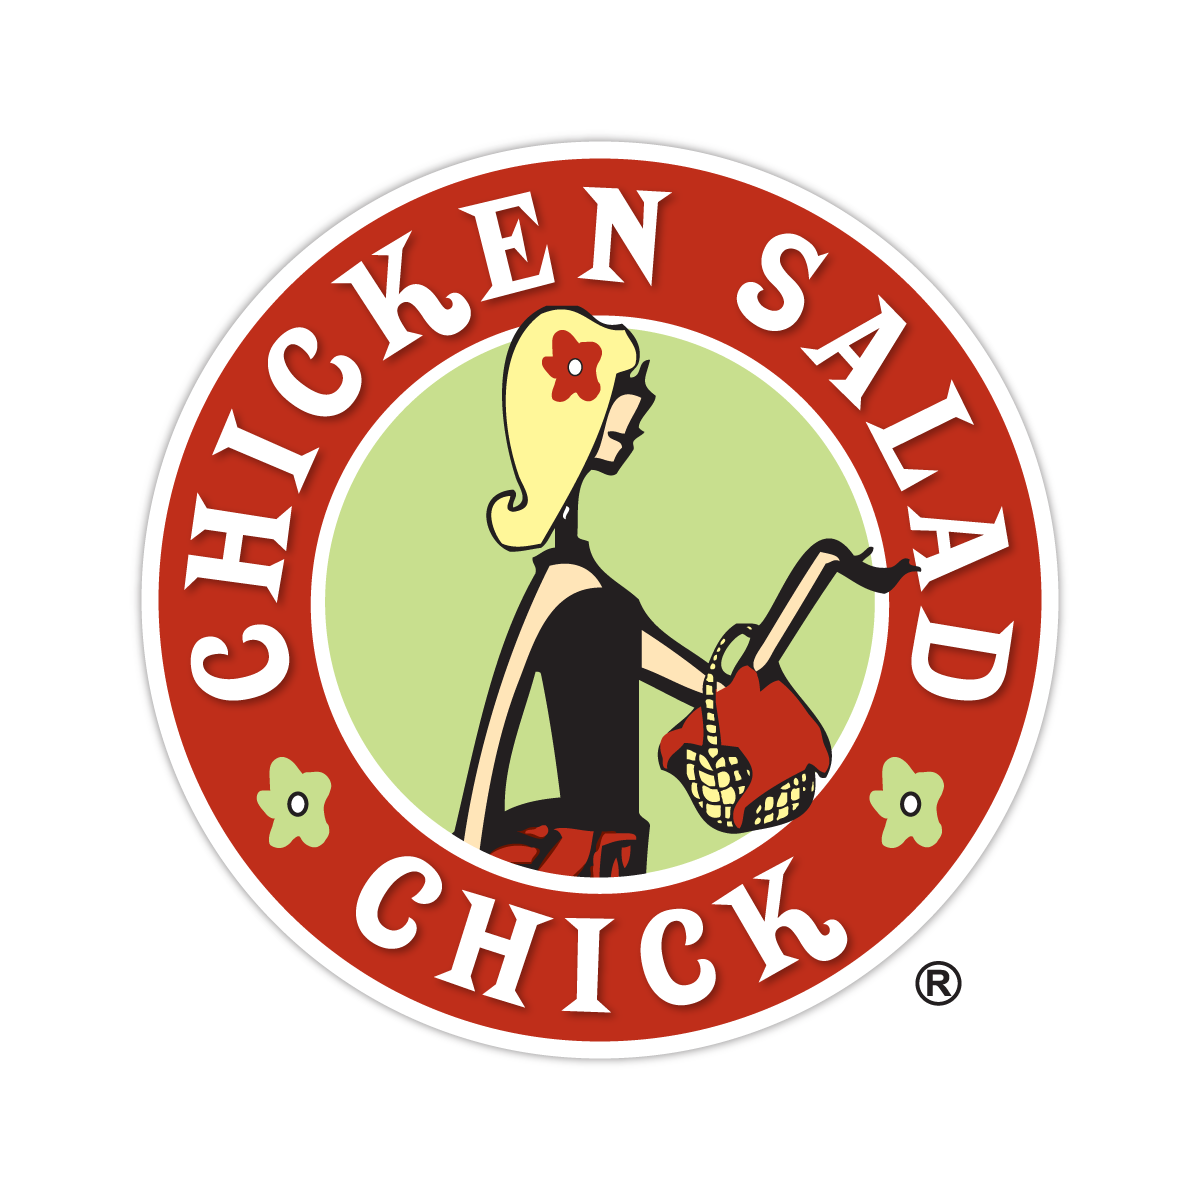 Chicken Salad Chick
Logo Design